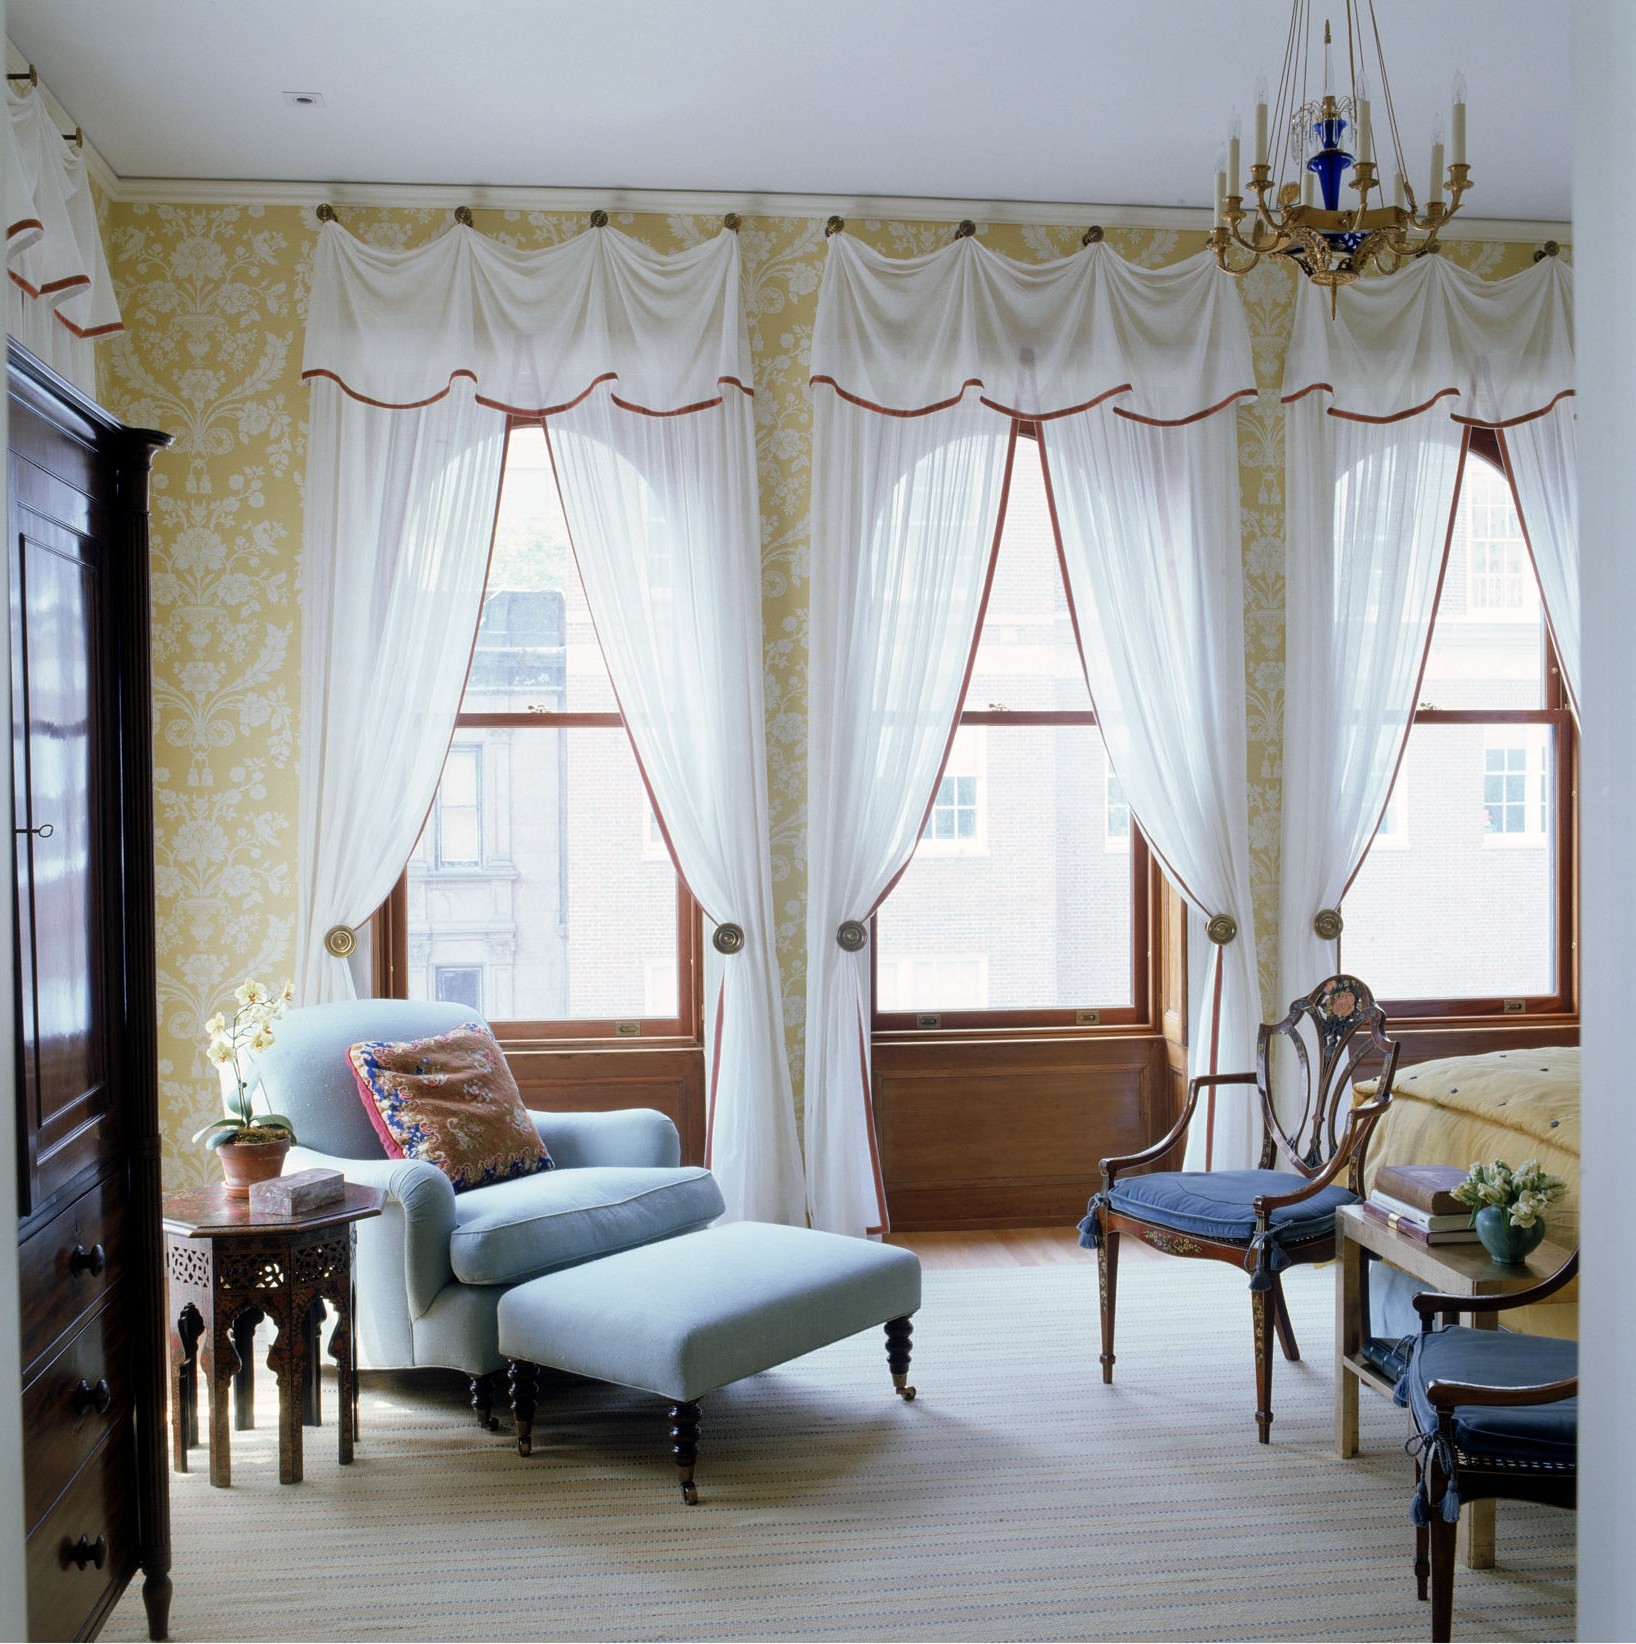 merveilleux-blanc-brun-foncé-bois-verre-design-moderne-beaux-rideaux-tissu-blanc-rideau-cantonnière-retenues-fenêtres-intérieur-au-salon-avec-draperie-idées-pour-vivre- salle-également-fenêtre-traitement